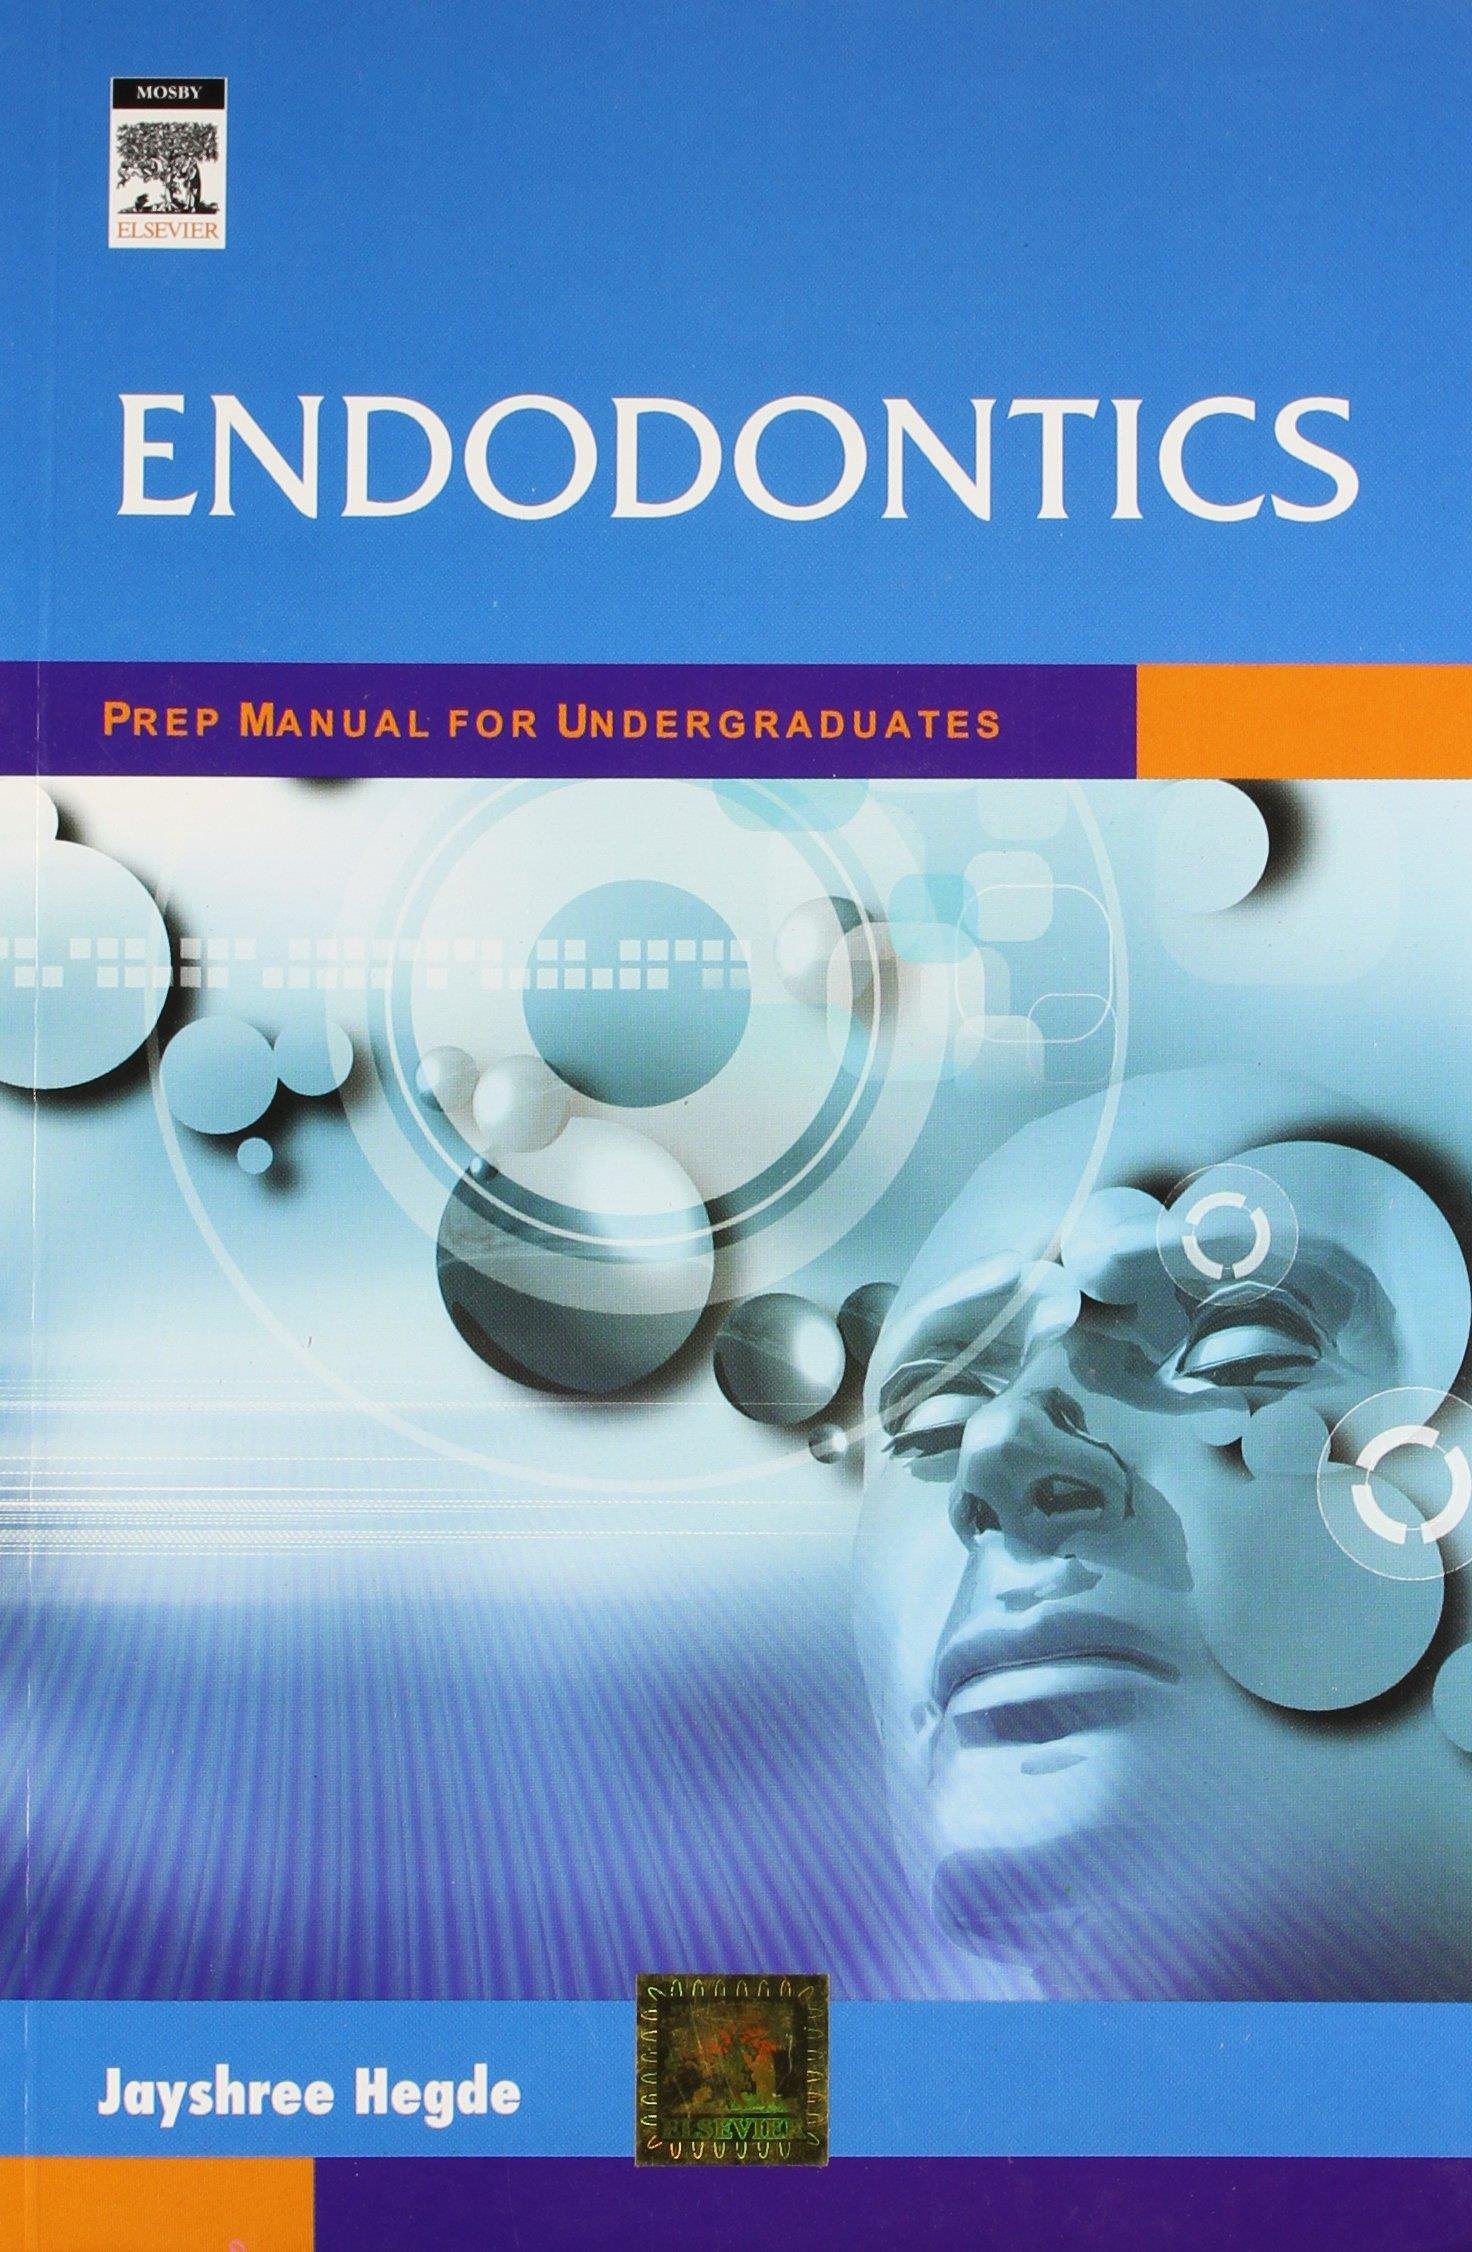 Endodontics: Prep Manual For Undergraduates